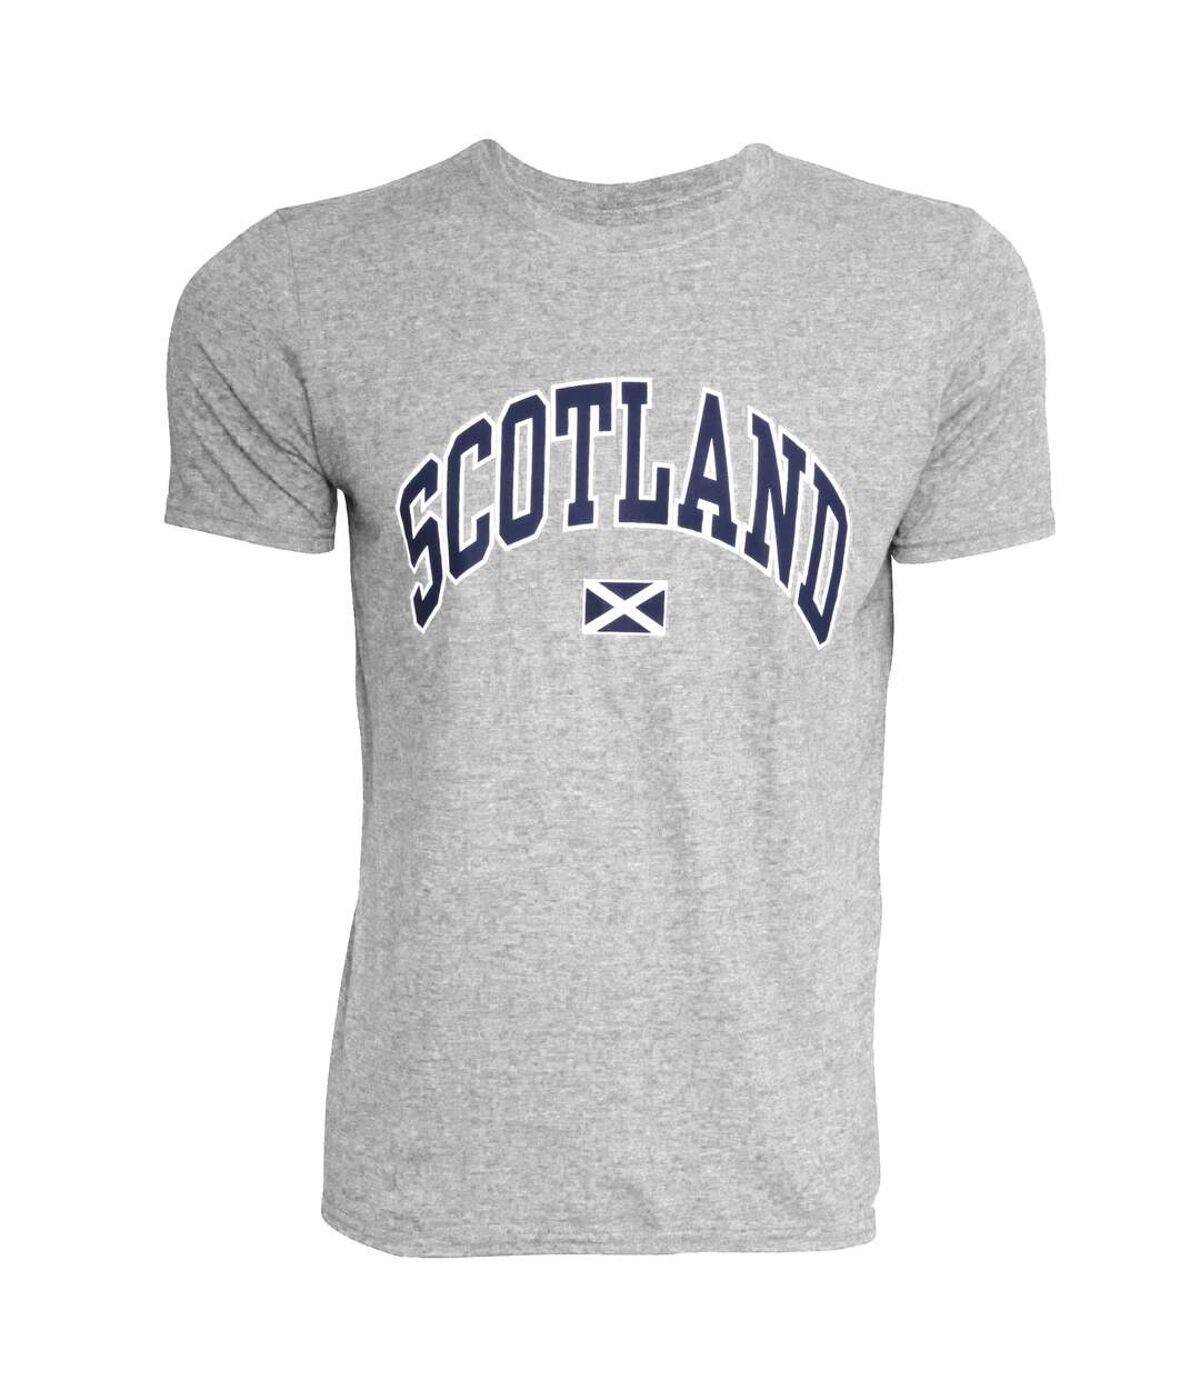 T-shirt à manches courtes imprimé Scotland - Homme (Gris pâle) - UTSHIRT127